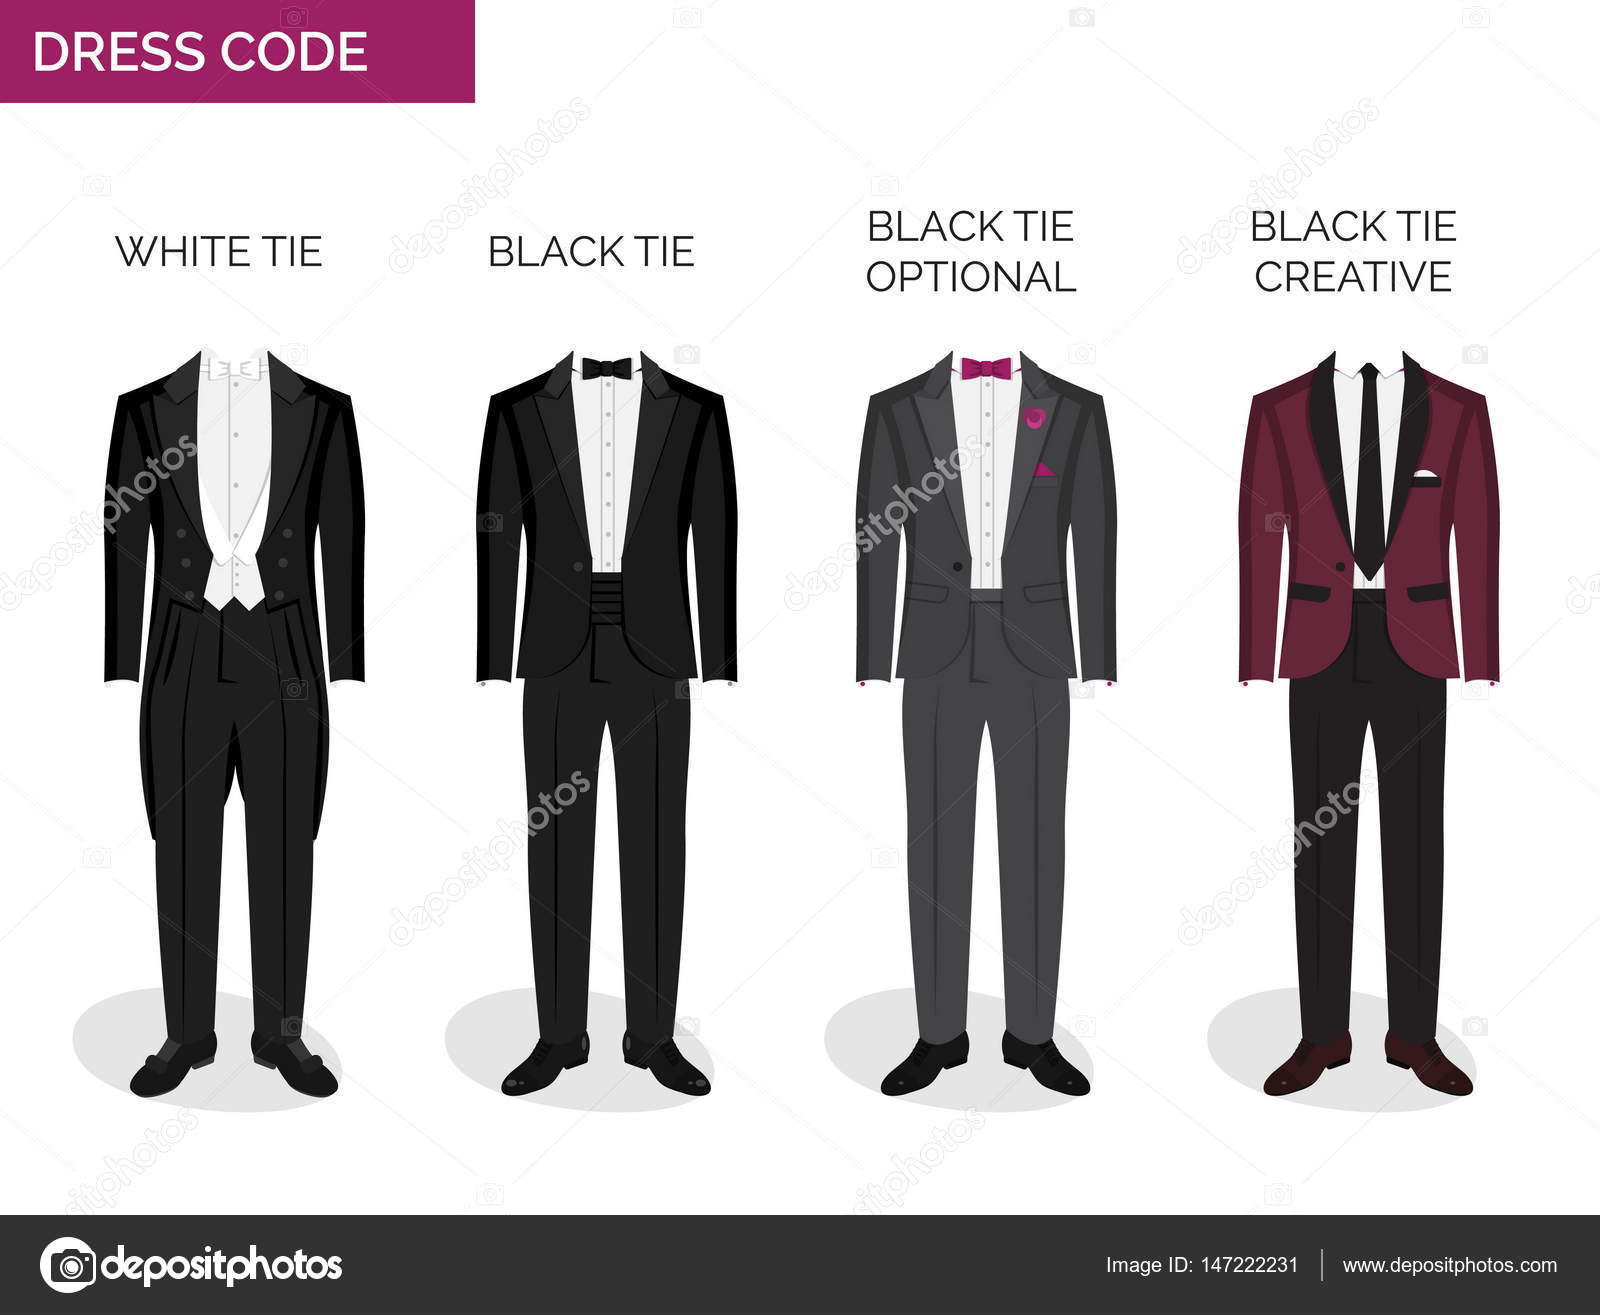 Guia de código de vestimenta formal para homens imagem vetorial de